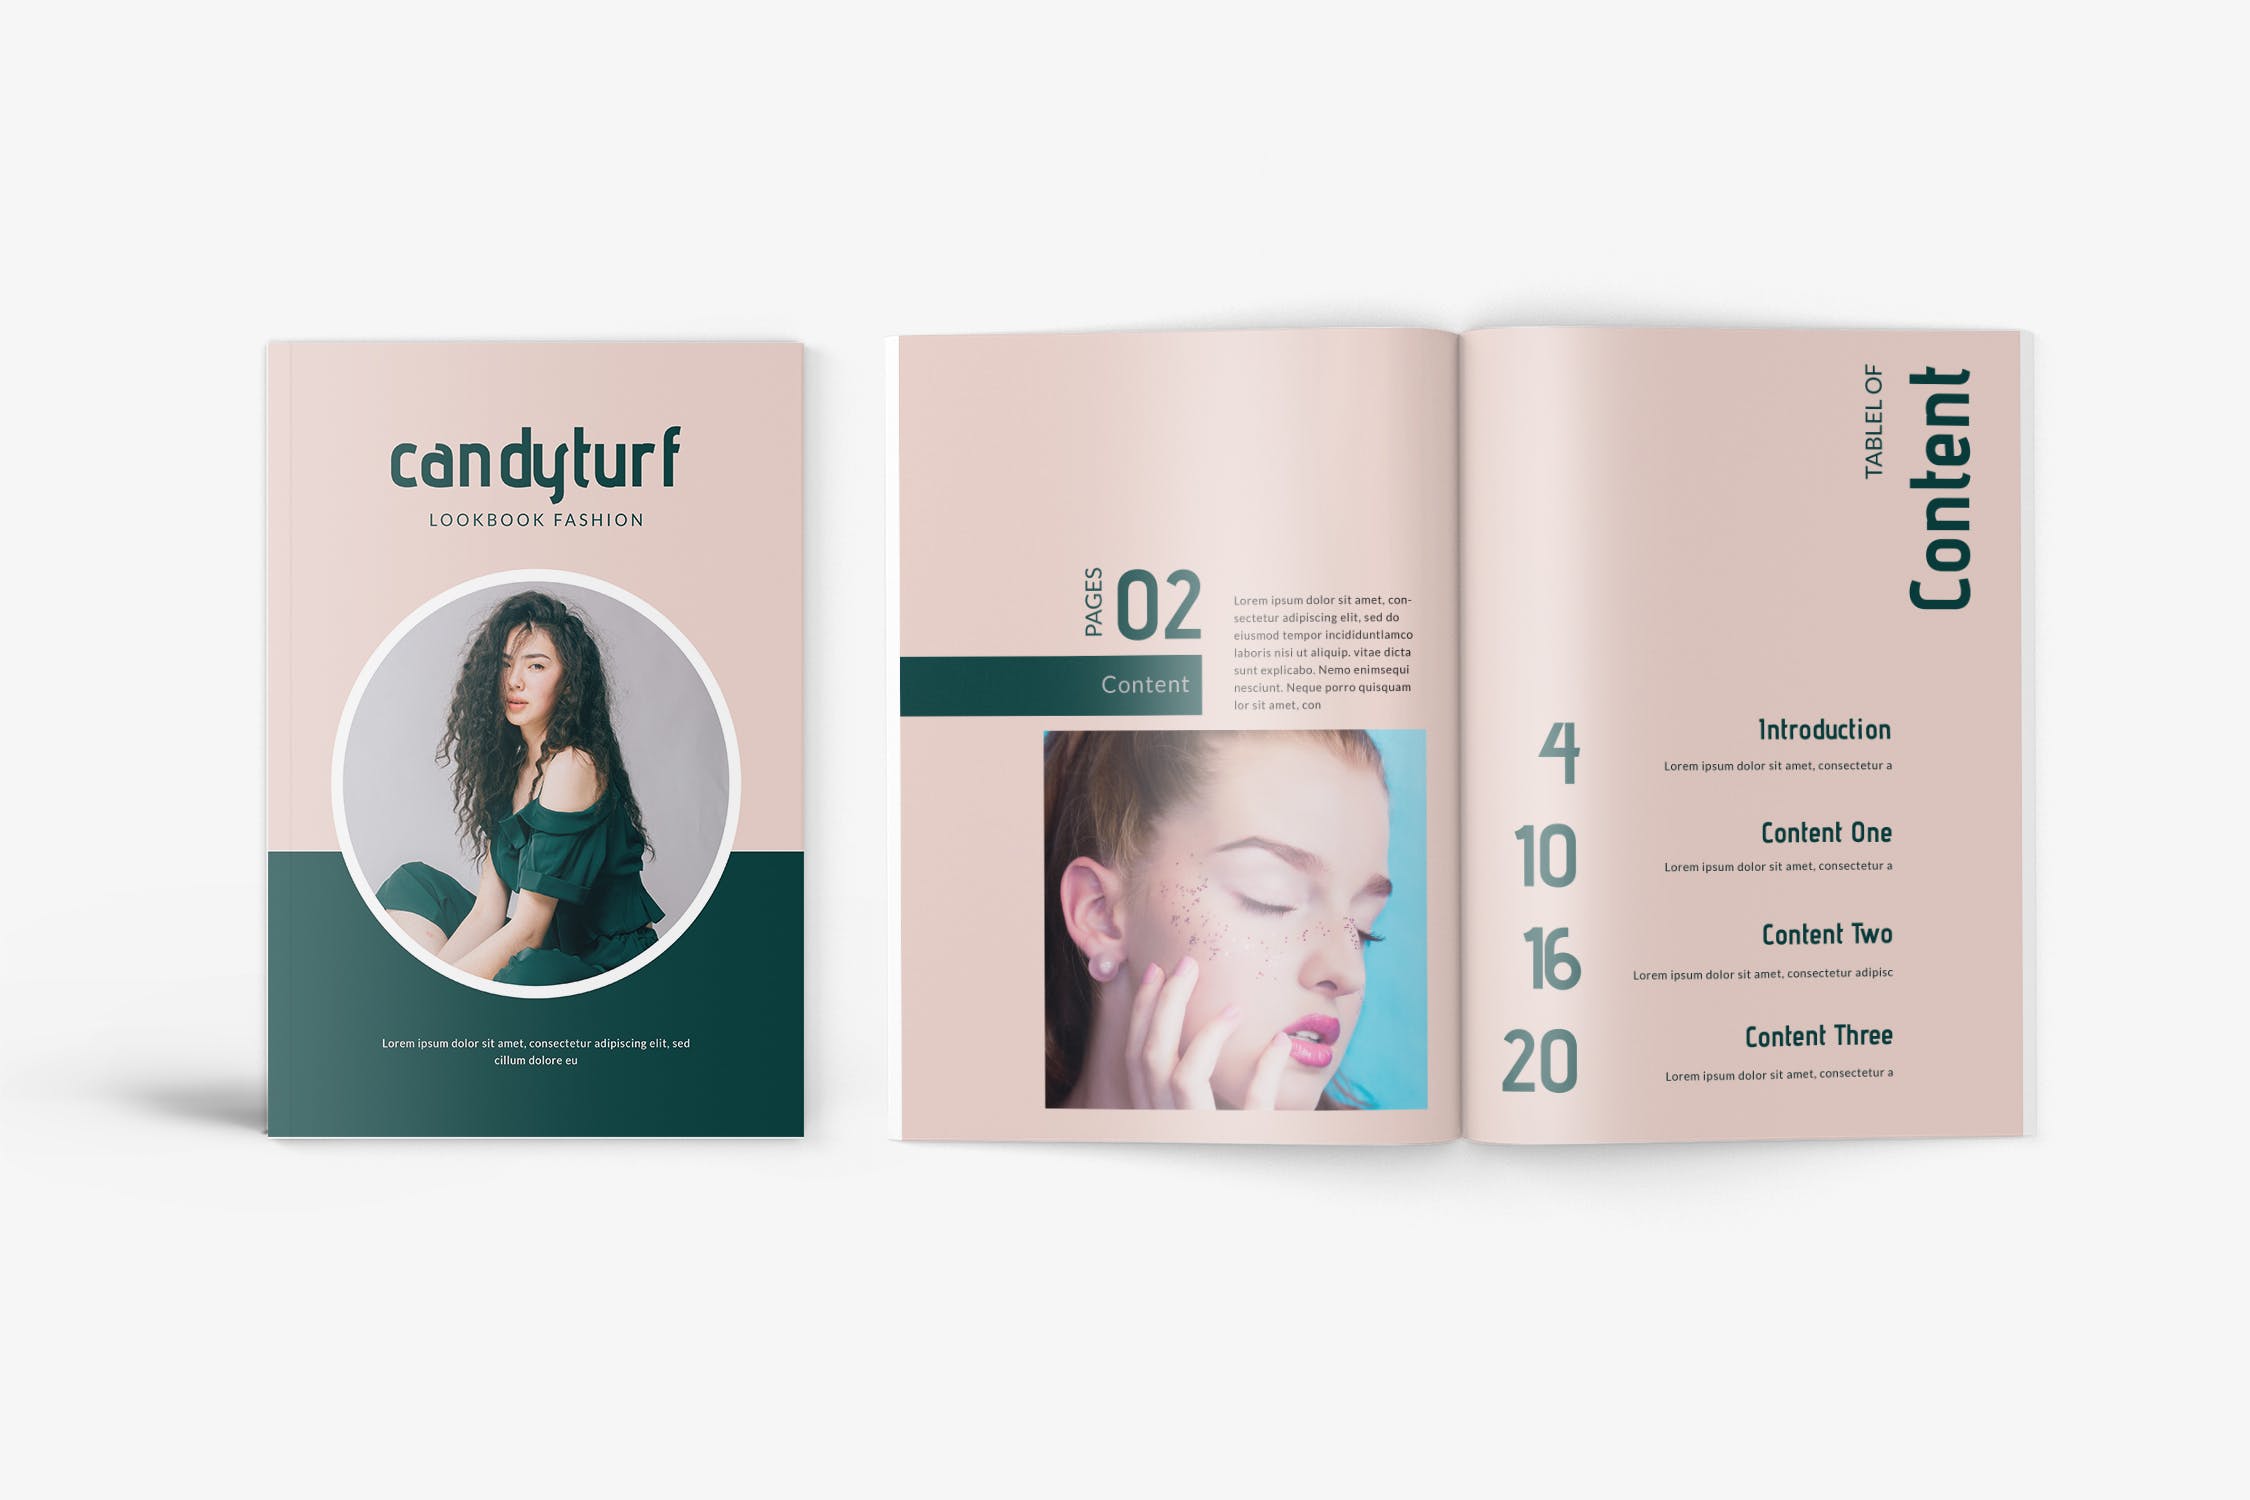 时尚服饰品牌产品蚂蚁素材精选目录设计模板 Candyturf Fashion Lookbook Catalogue插图